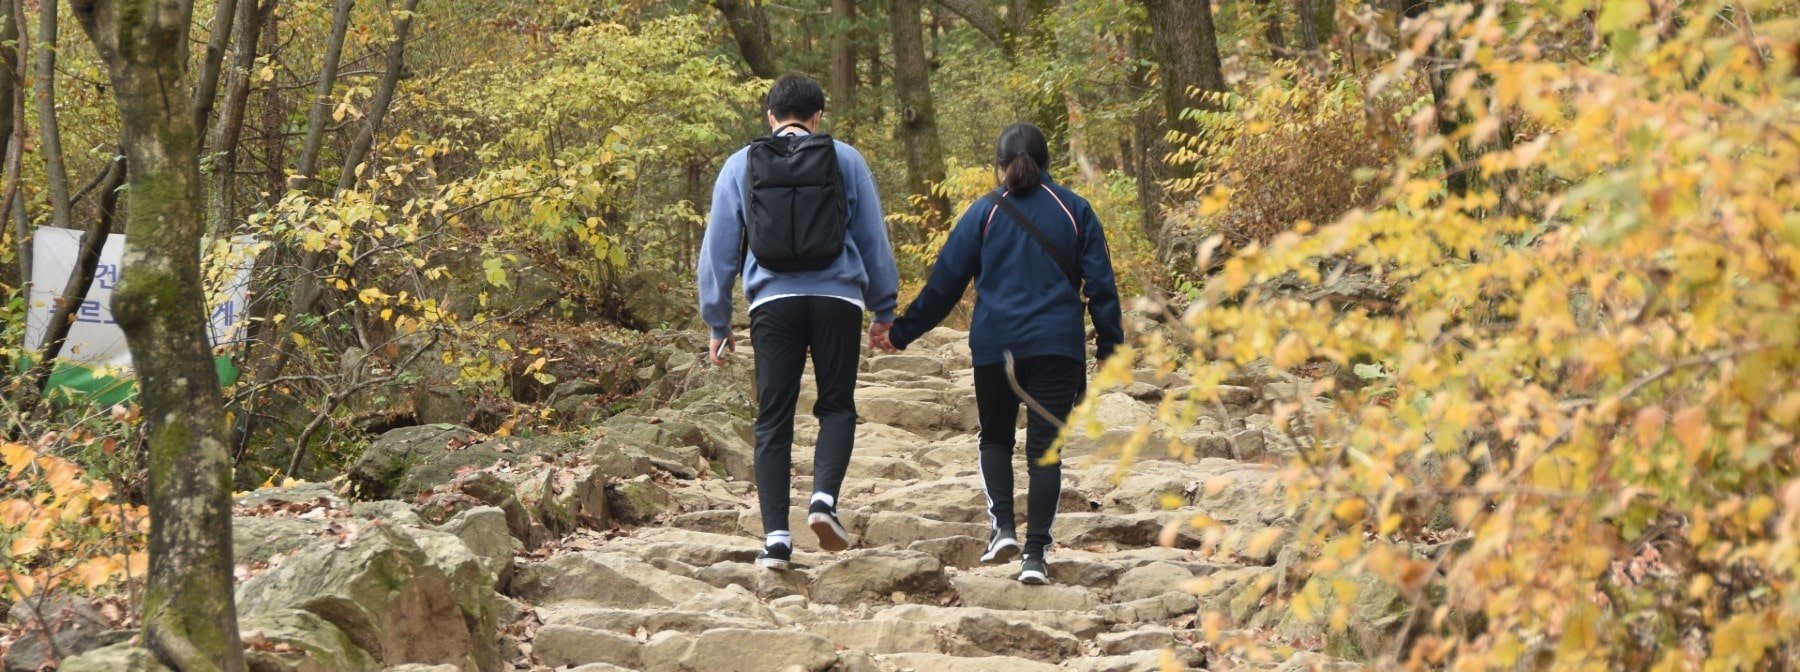 Das Spazierengehen mit einem Partner könnte dich langsamer machen – verrät neue Studie